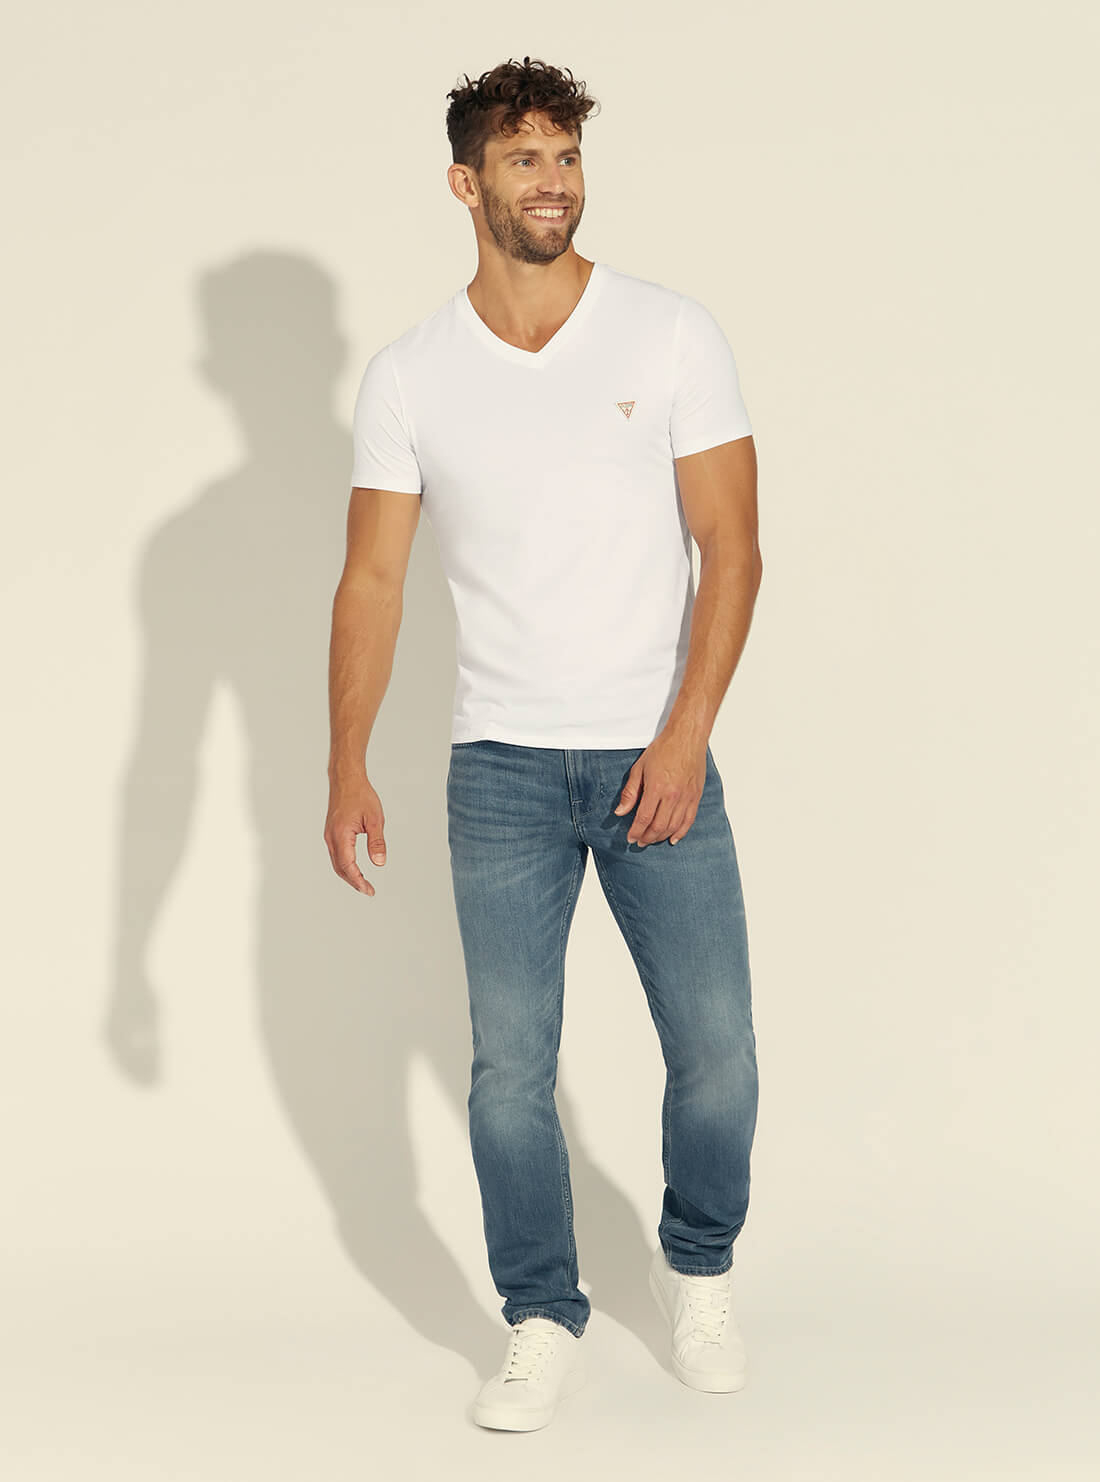 GUESS Mens Eco White V-Neck Basic T-Shirt M1RI37I3Z11 Full View